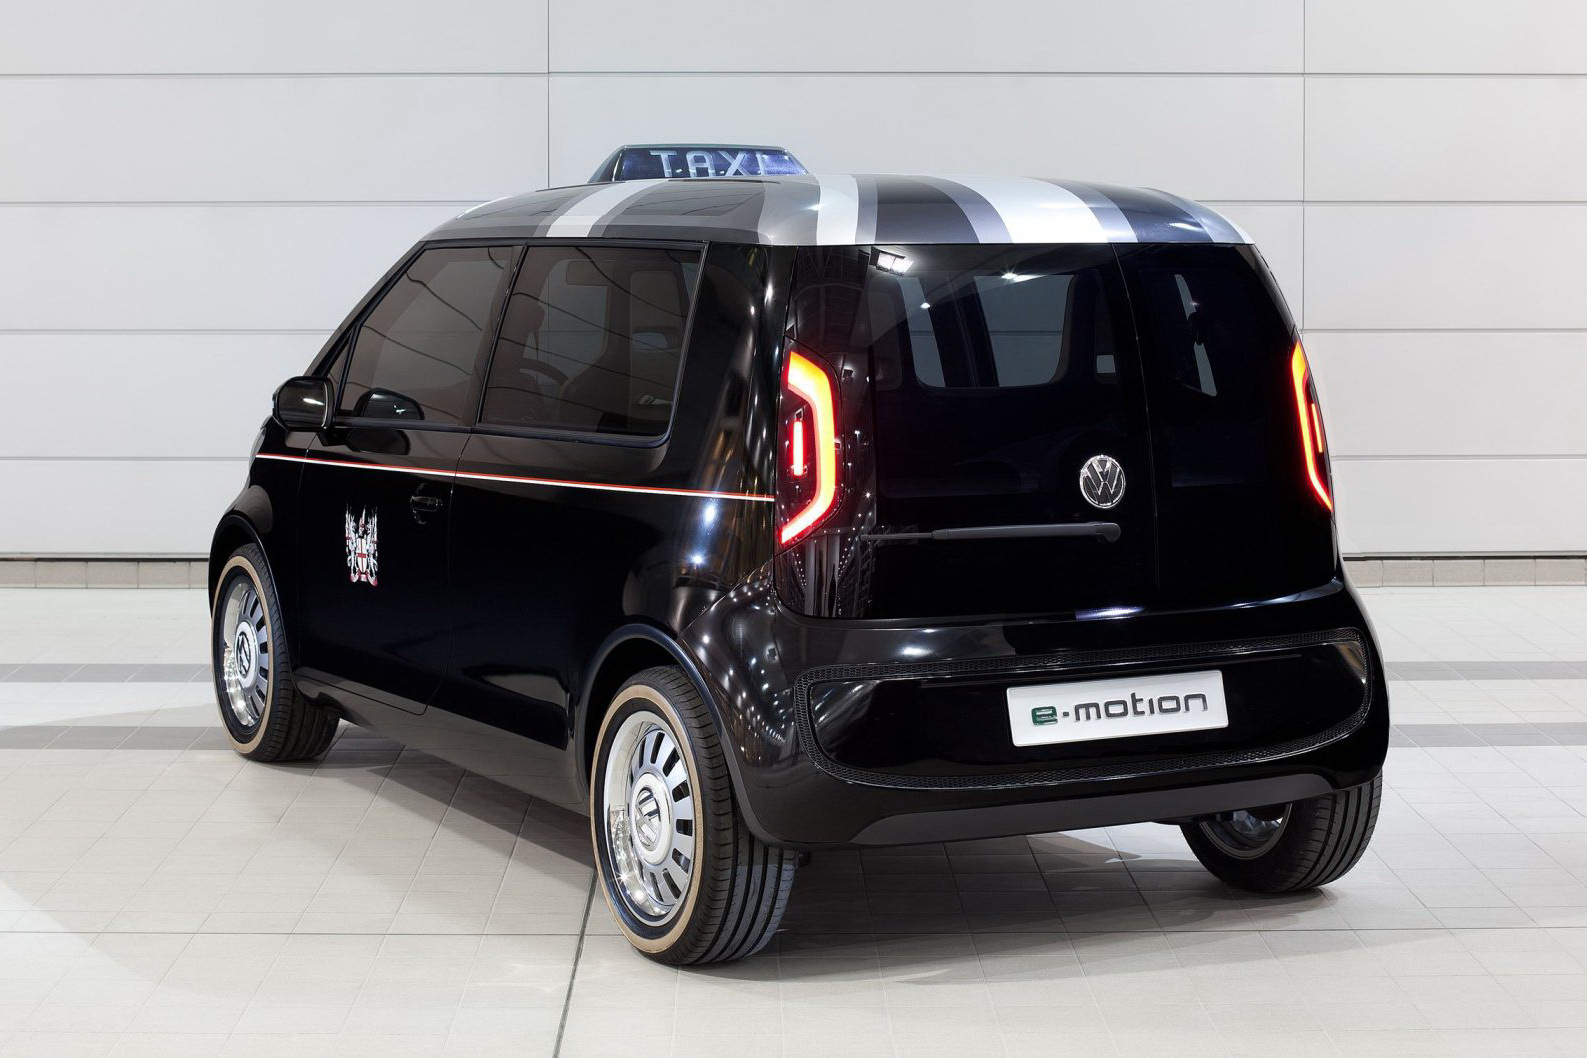 Vor accepta londonezii inlocuirea celebrelor taxiuri cu un astfel de VW London Taxi?